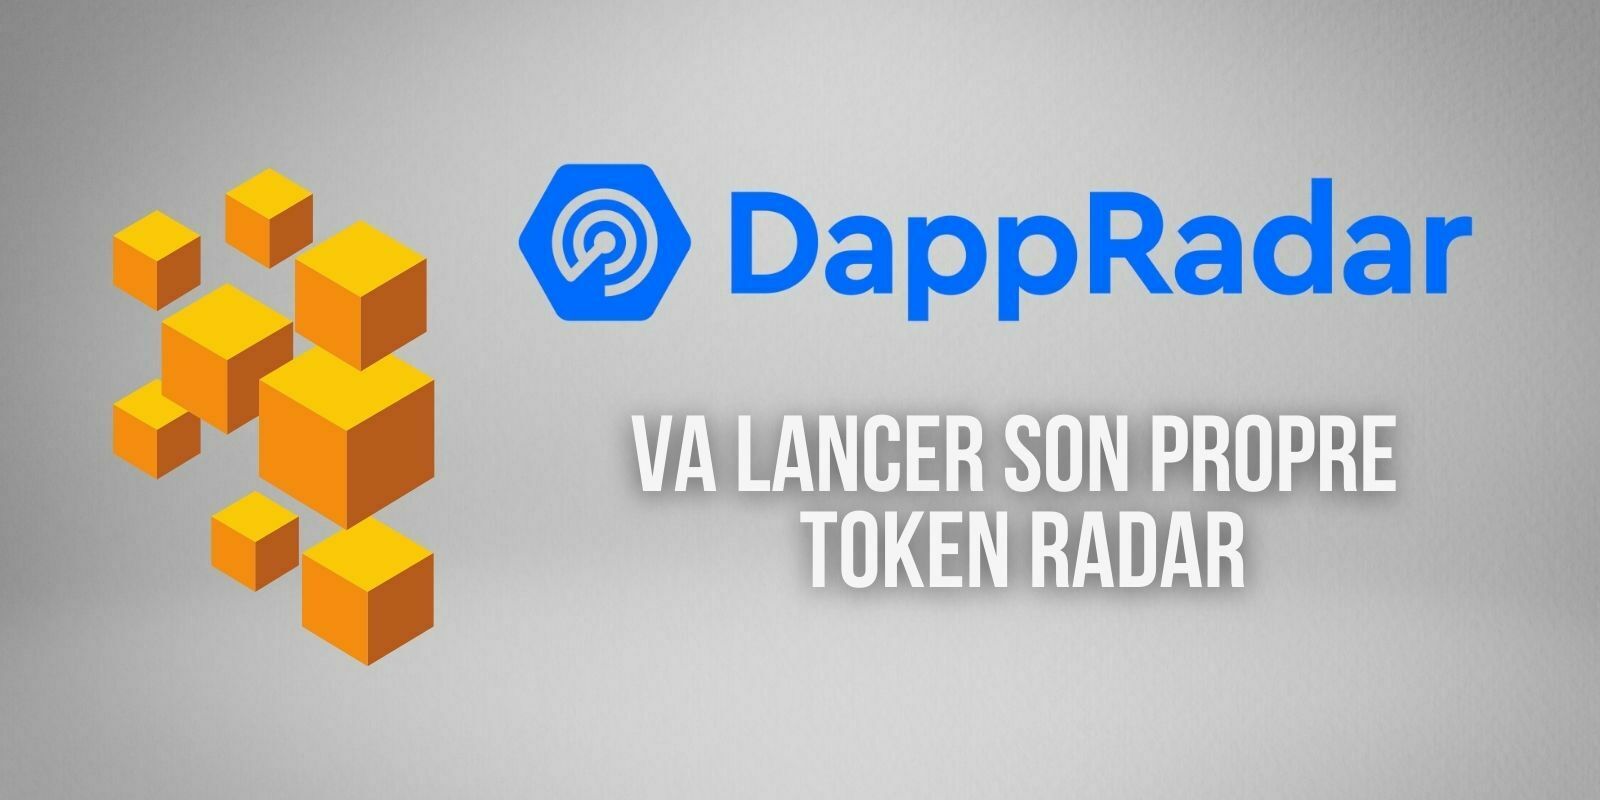 Le site d’analyse DappRadar va lancer son propre token RADAR